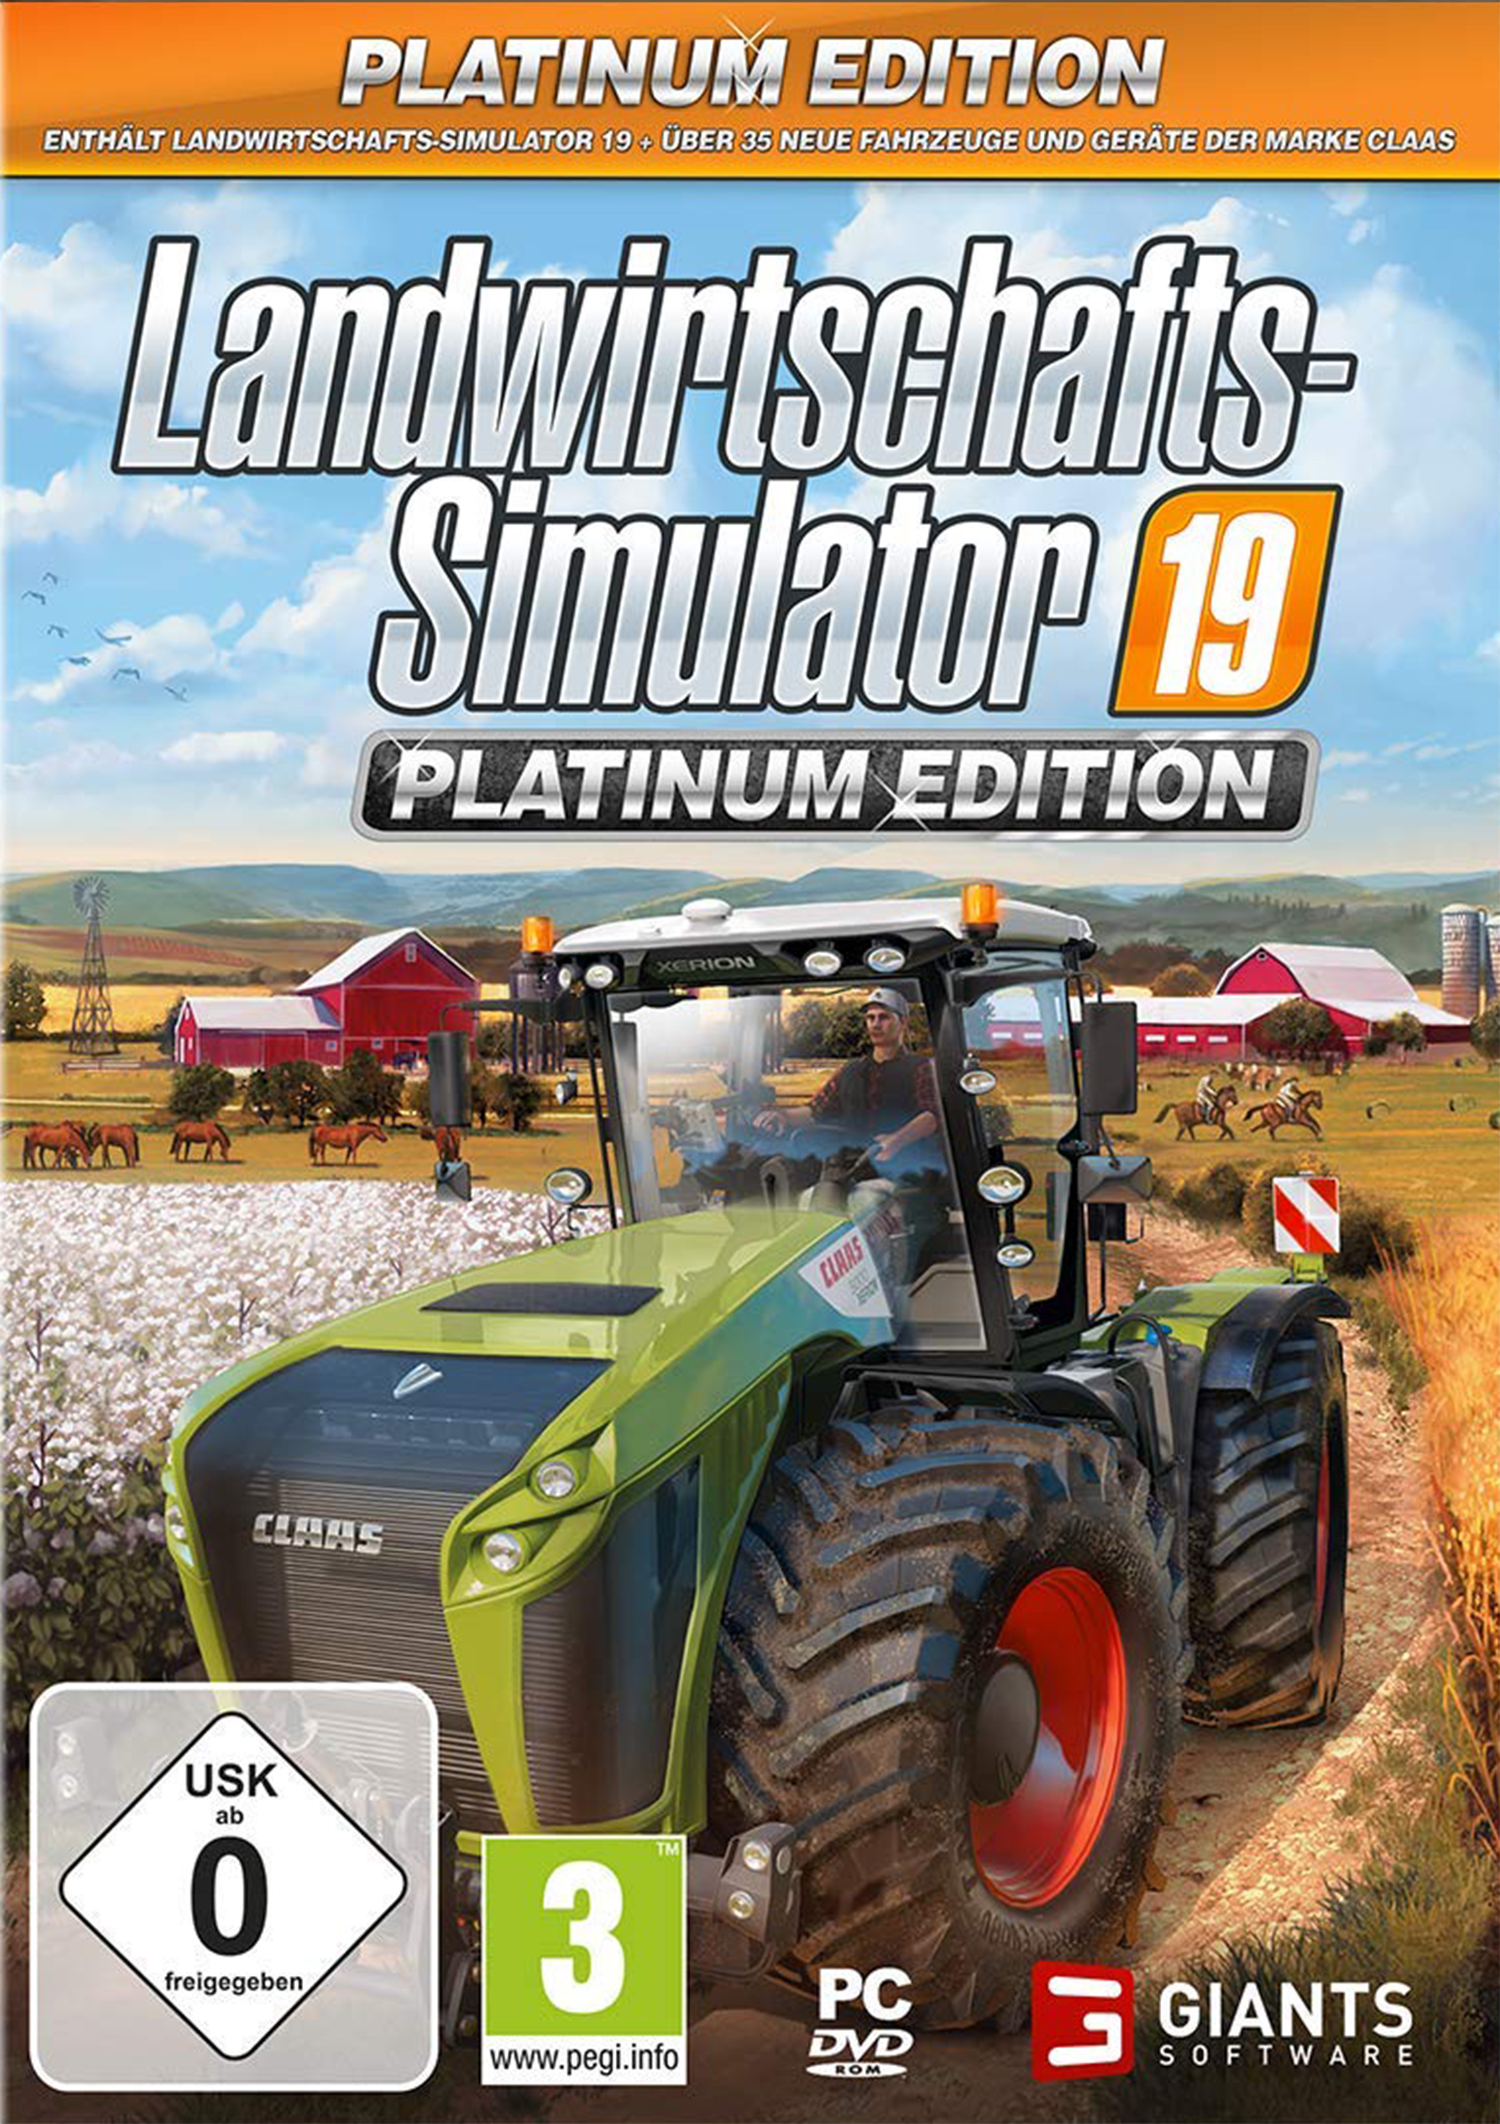 Platinum Boy] Landwirtschafts-Simulator Edition - [Game 19: